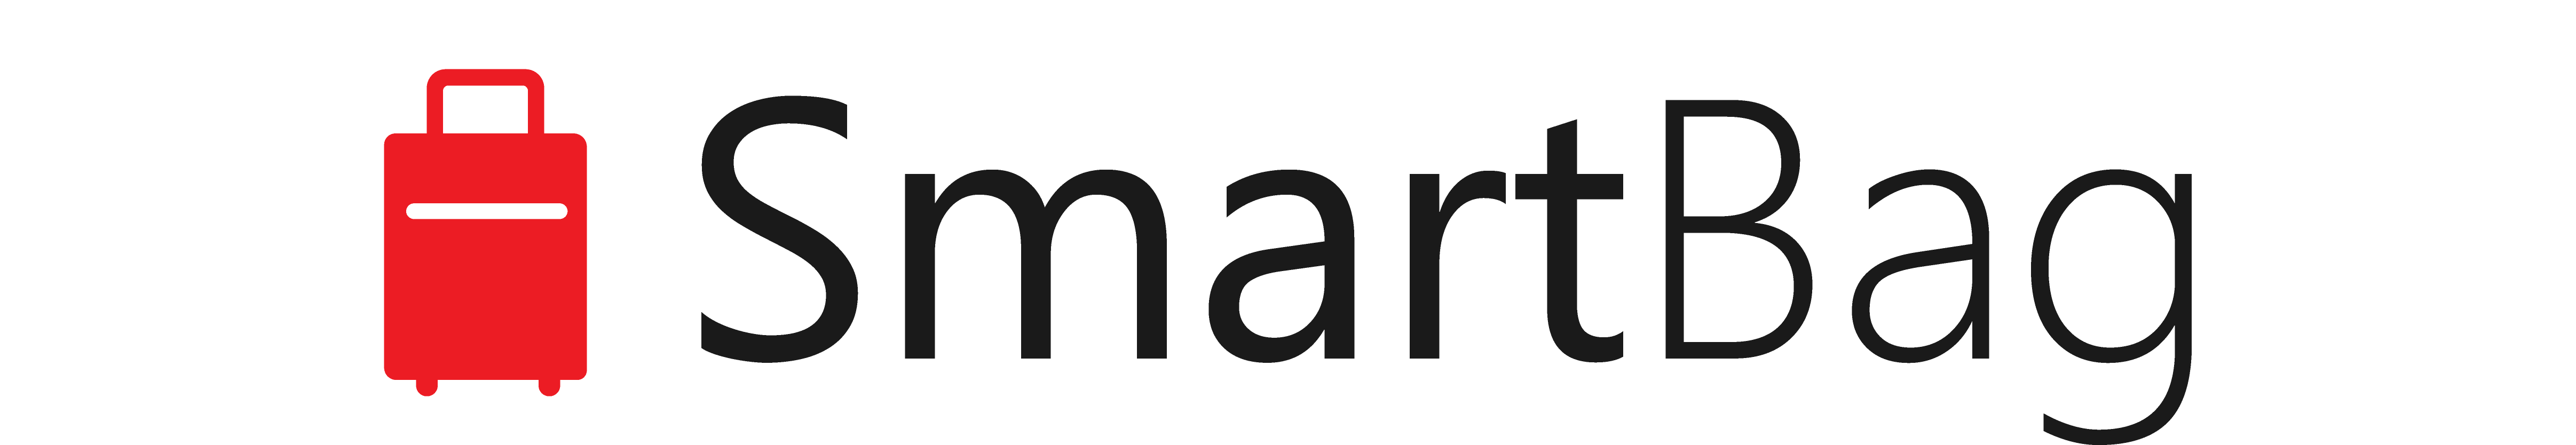 SmartClear Logo